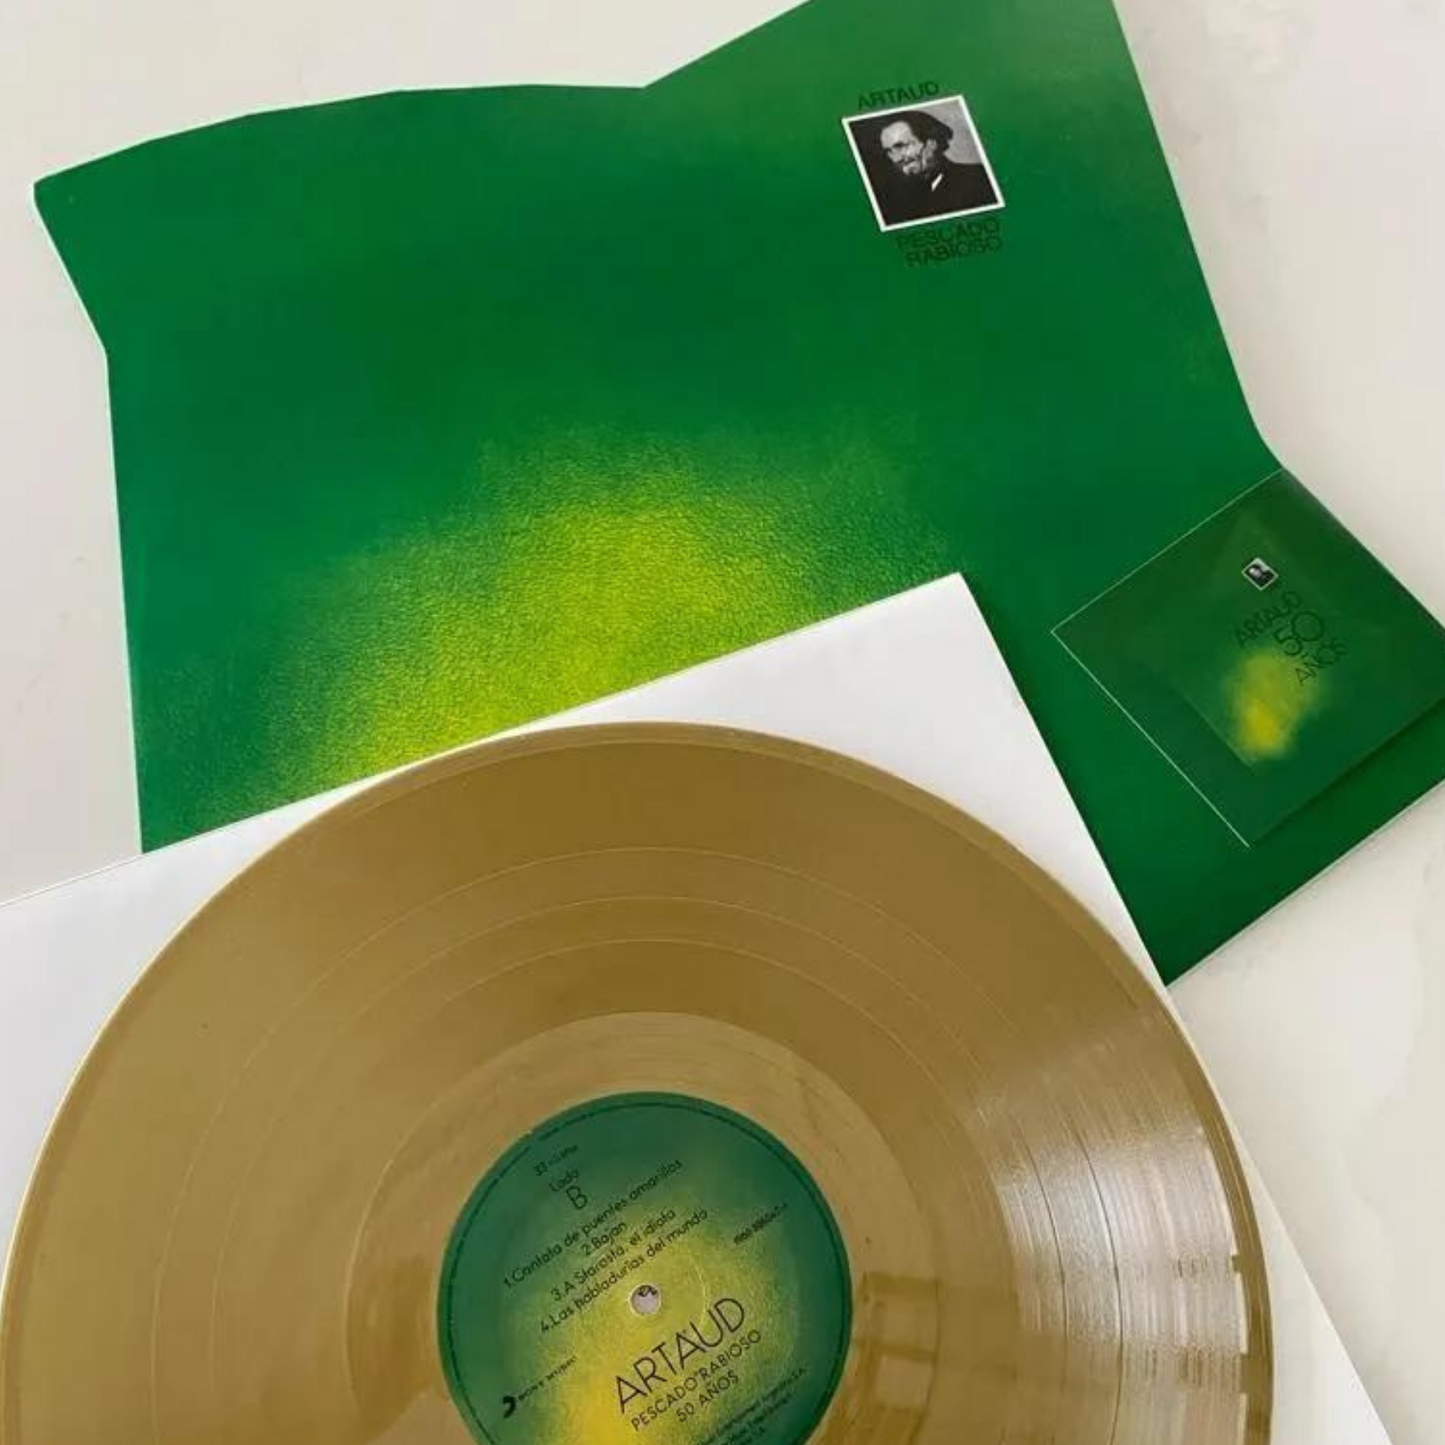 Pescado Rabioso – Artaud 50 años vinyl dorado